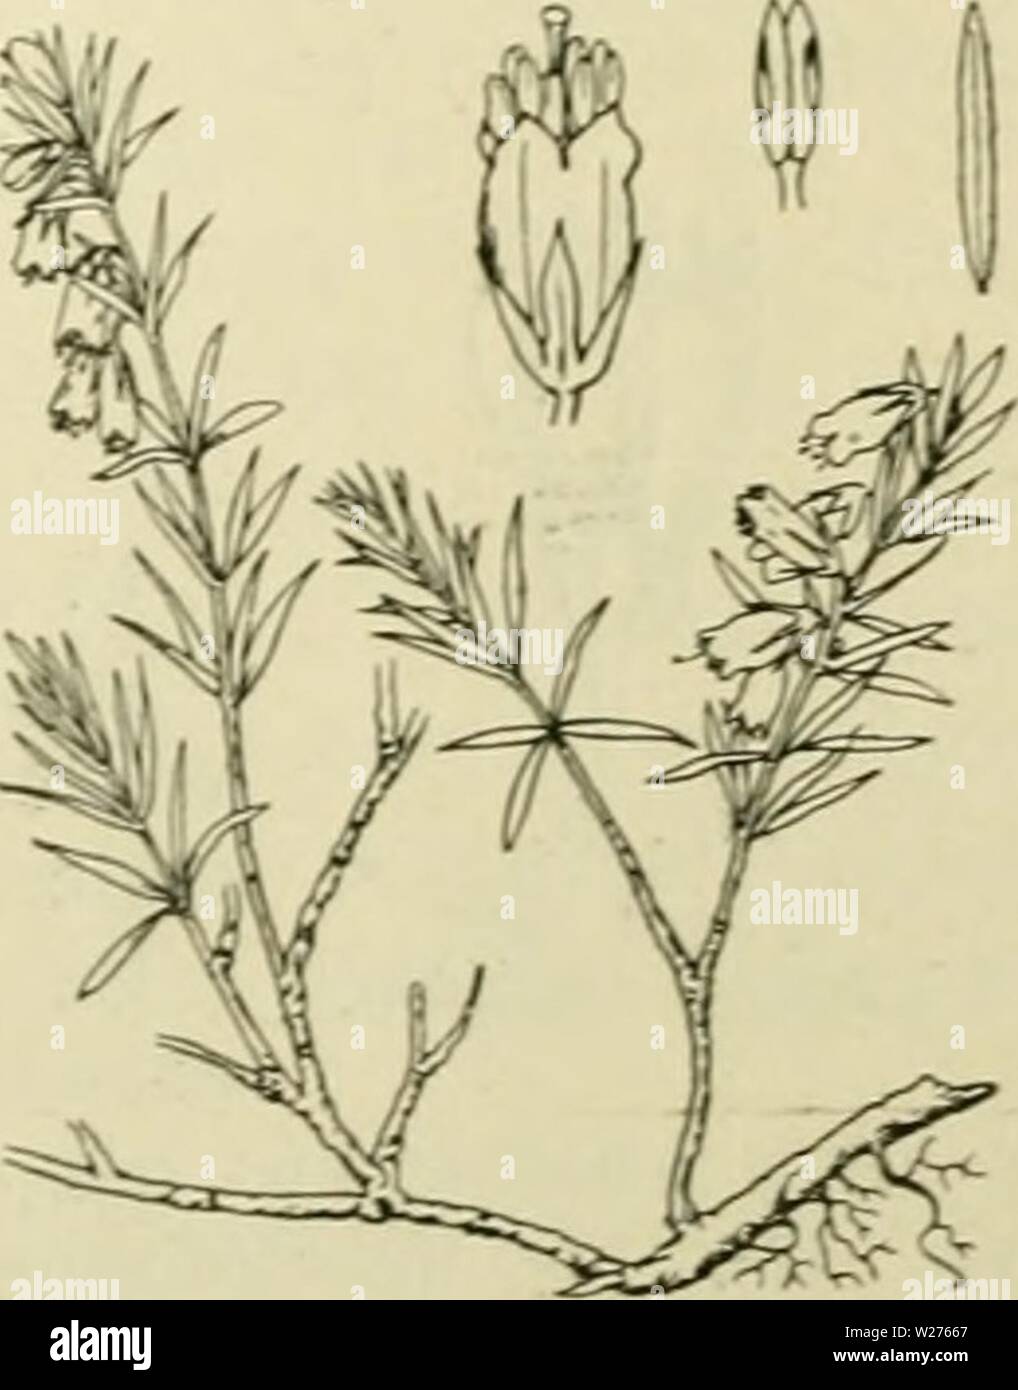 Archive image from page 42 of De flora van Nederland (1909-11). De flora van Nederland  defloravannederl03heuk Year: 1909-11.  Erica Tetralix Fig. 24. b. Hclmknopjcs in do liloeinkroon innesloten, op de ruKzijdc aan de helmdraden be- vestigd. Bloemen roodviolet, in kransen staand en vericnjjde trossen vormend. Bloomkroon 5-7 niM lan.t;. Stijl weinig uitstekend K. cluerea biz. 24. E. Tetralix') L. Dopheide (fig. 24). Deze plant is een rechtopstaande, vertakte, dicht bebladerde heester. De stengel is bruin gekleurd, de jonge takken zijn bruinrood, met fijne witte viltharen en enkele klier- haren Stock Photo